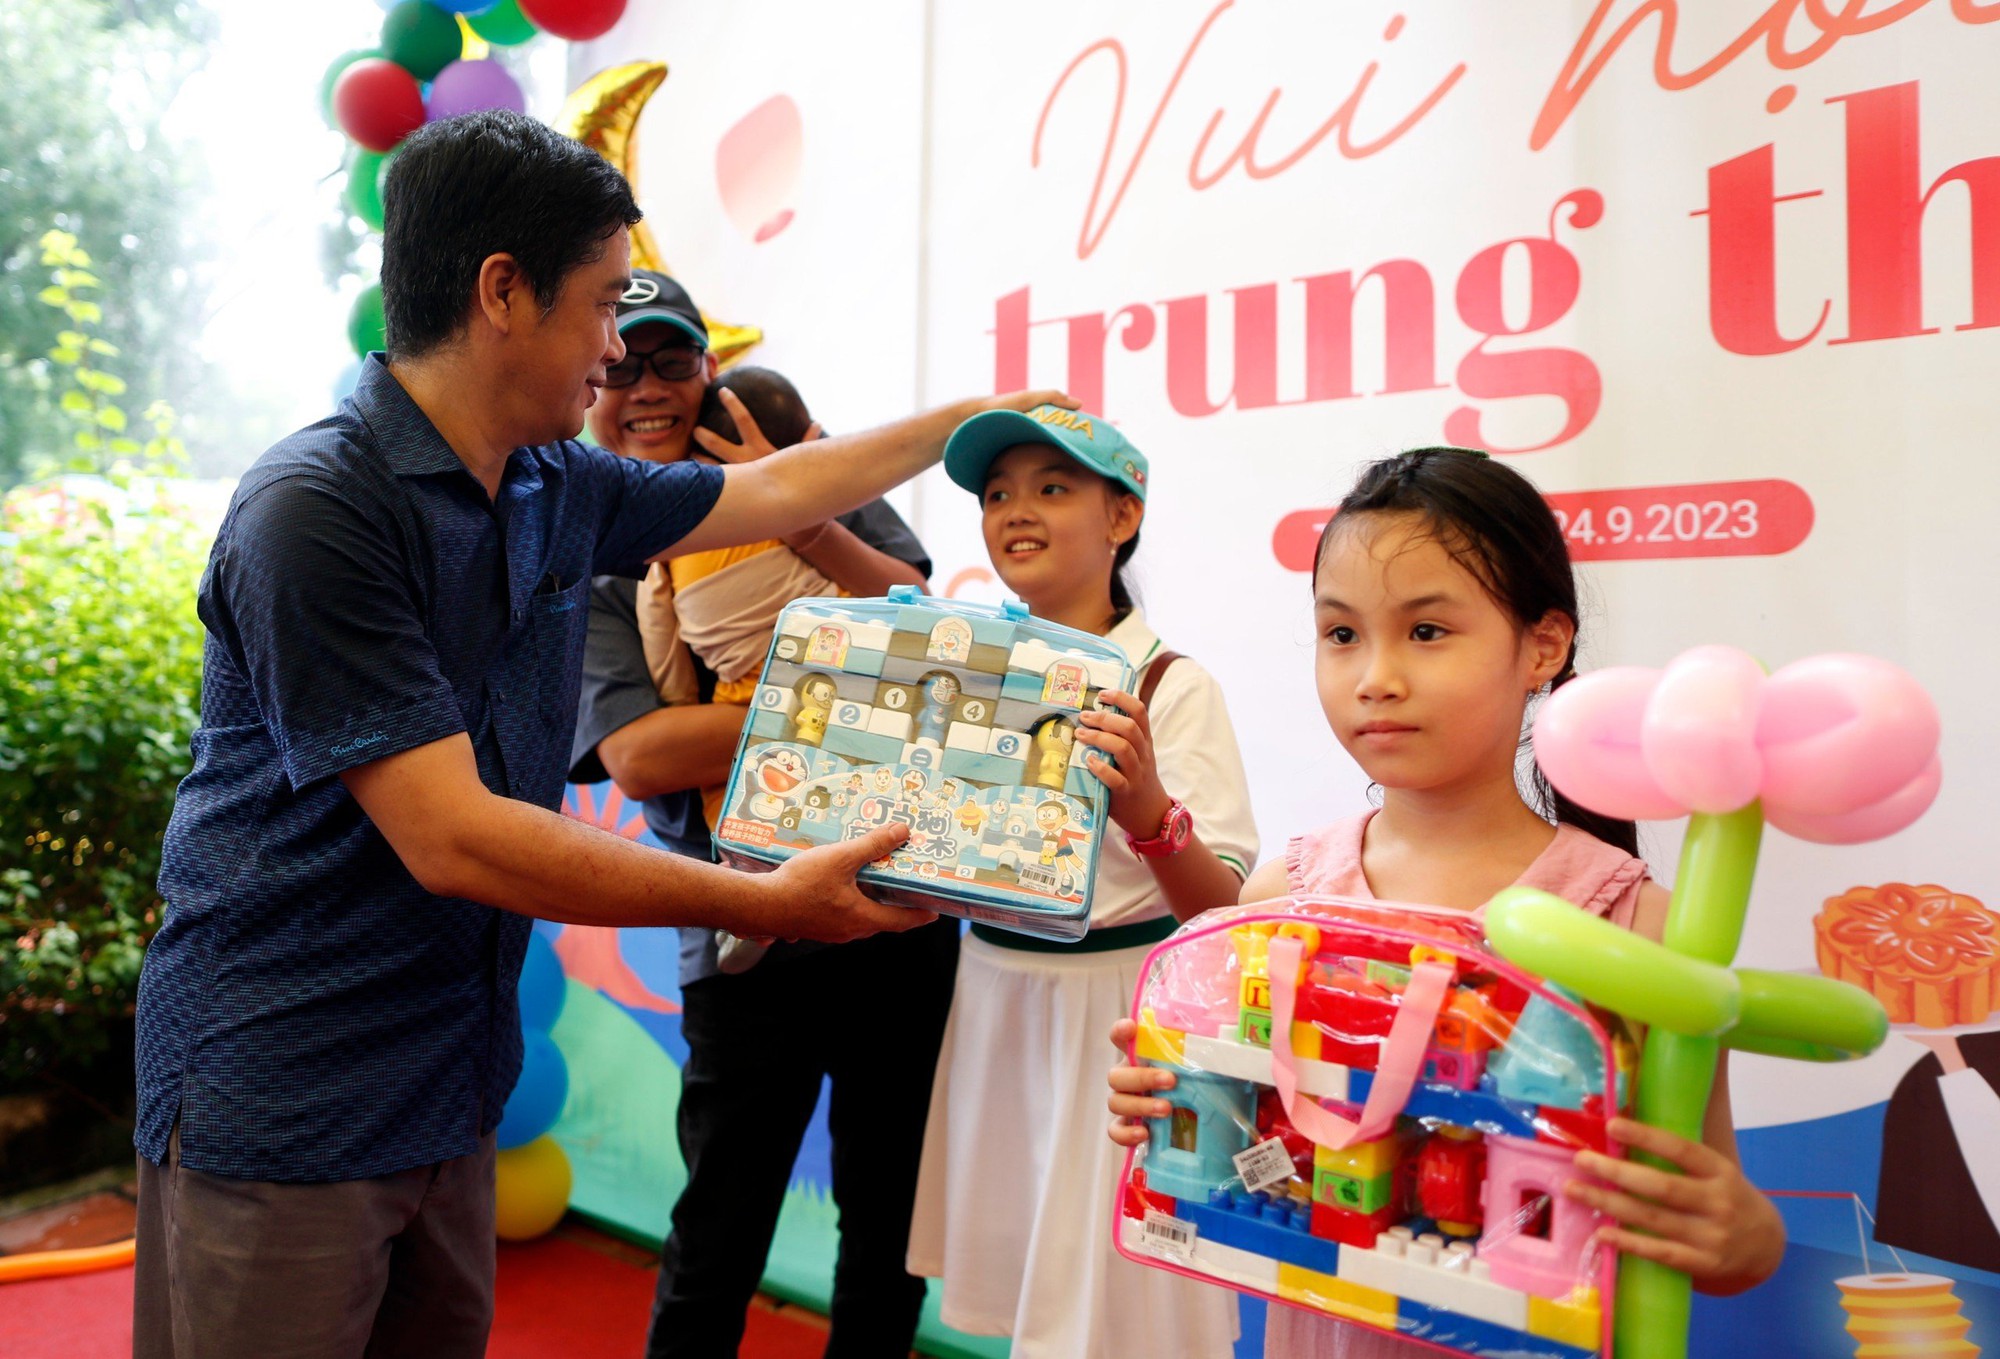 Các em nhỏ háo hức 'vui hội trung thu' ở Thảo Cầm Viên Sài Gòn - Ảnh 5.